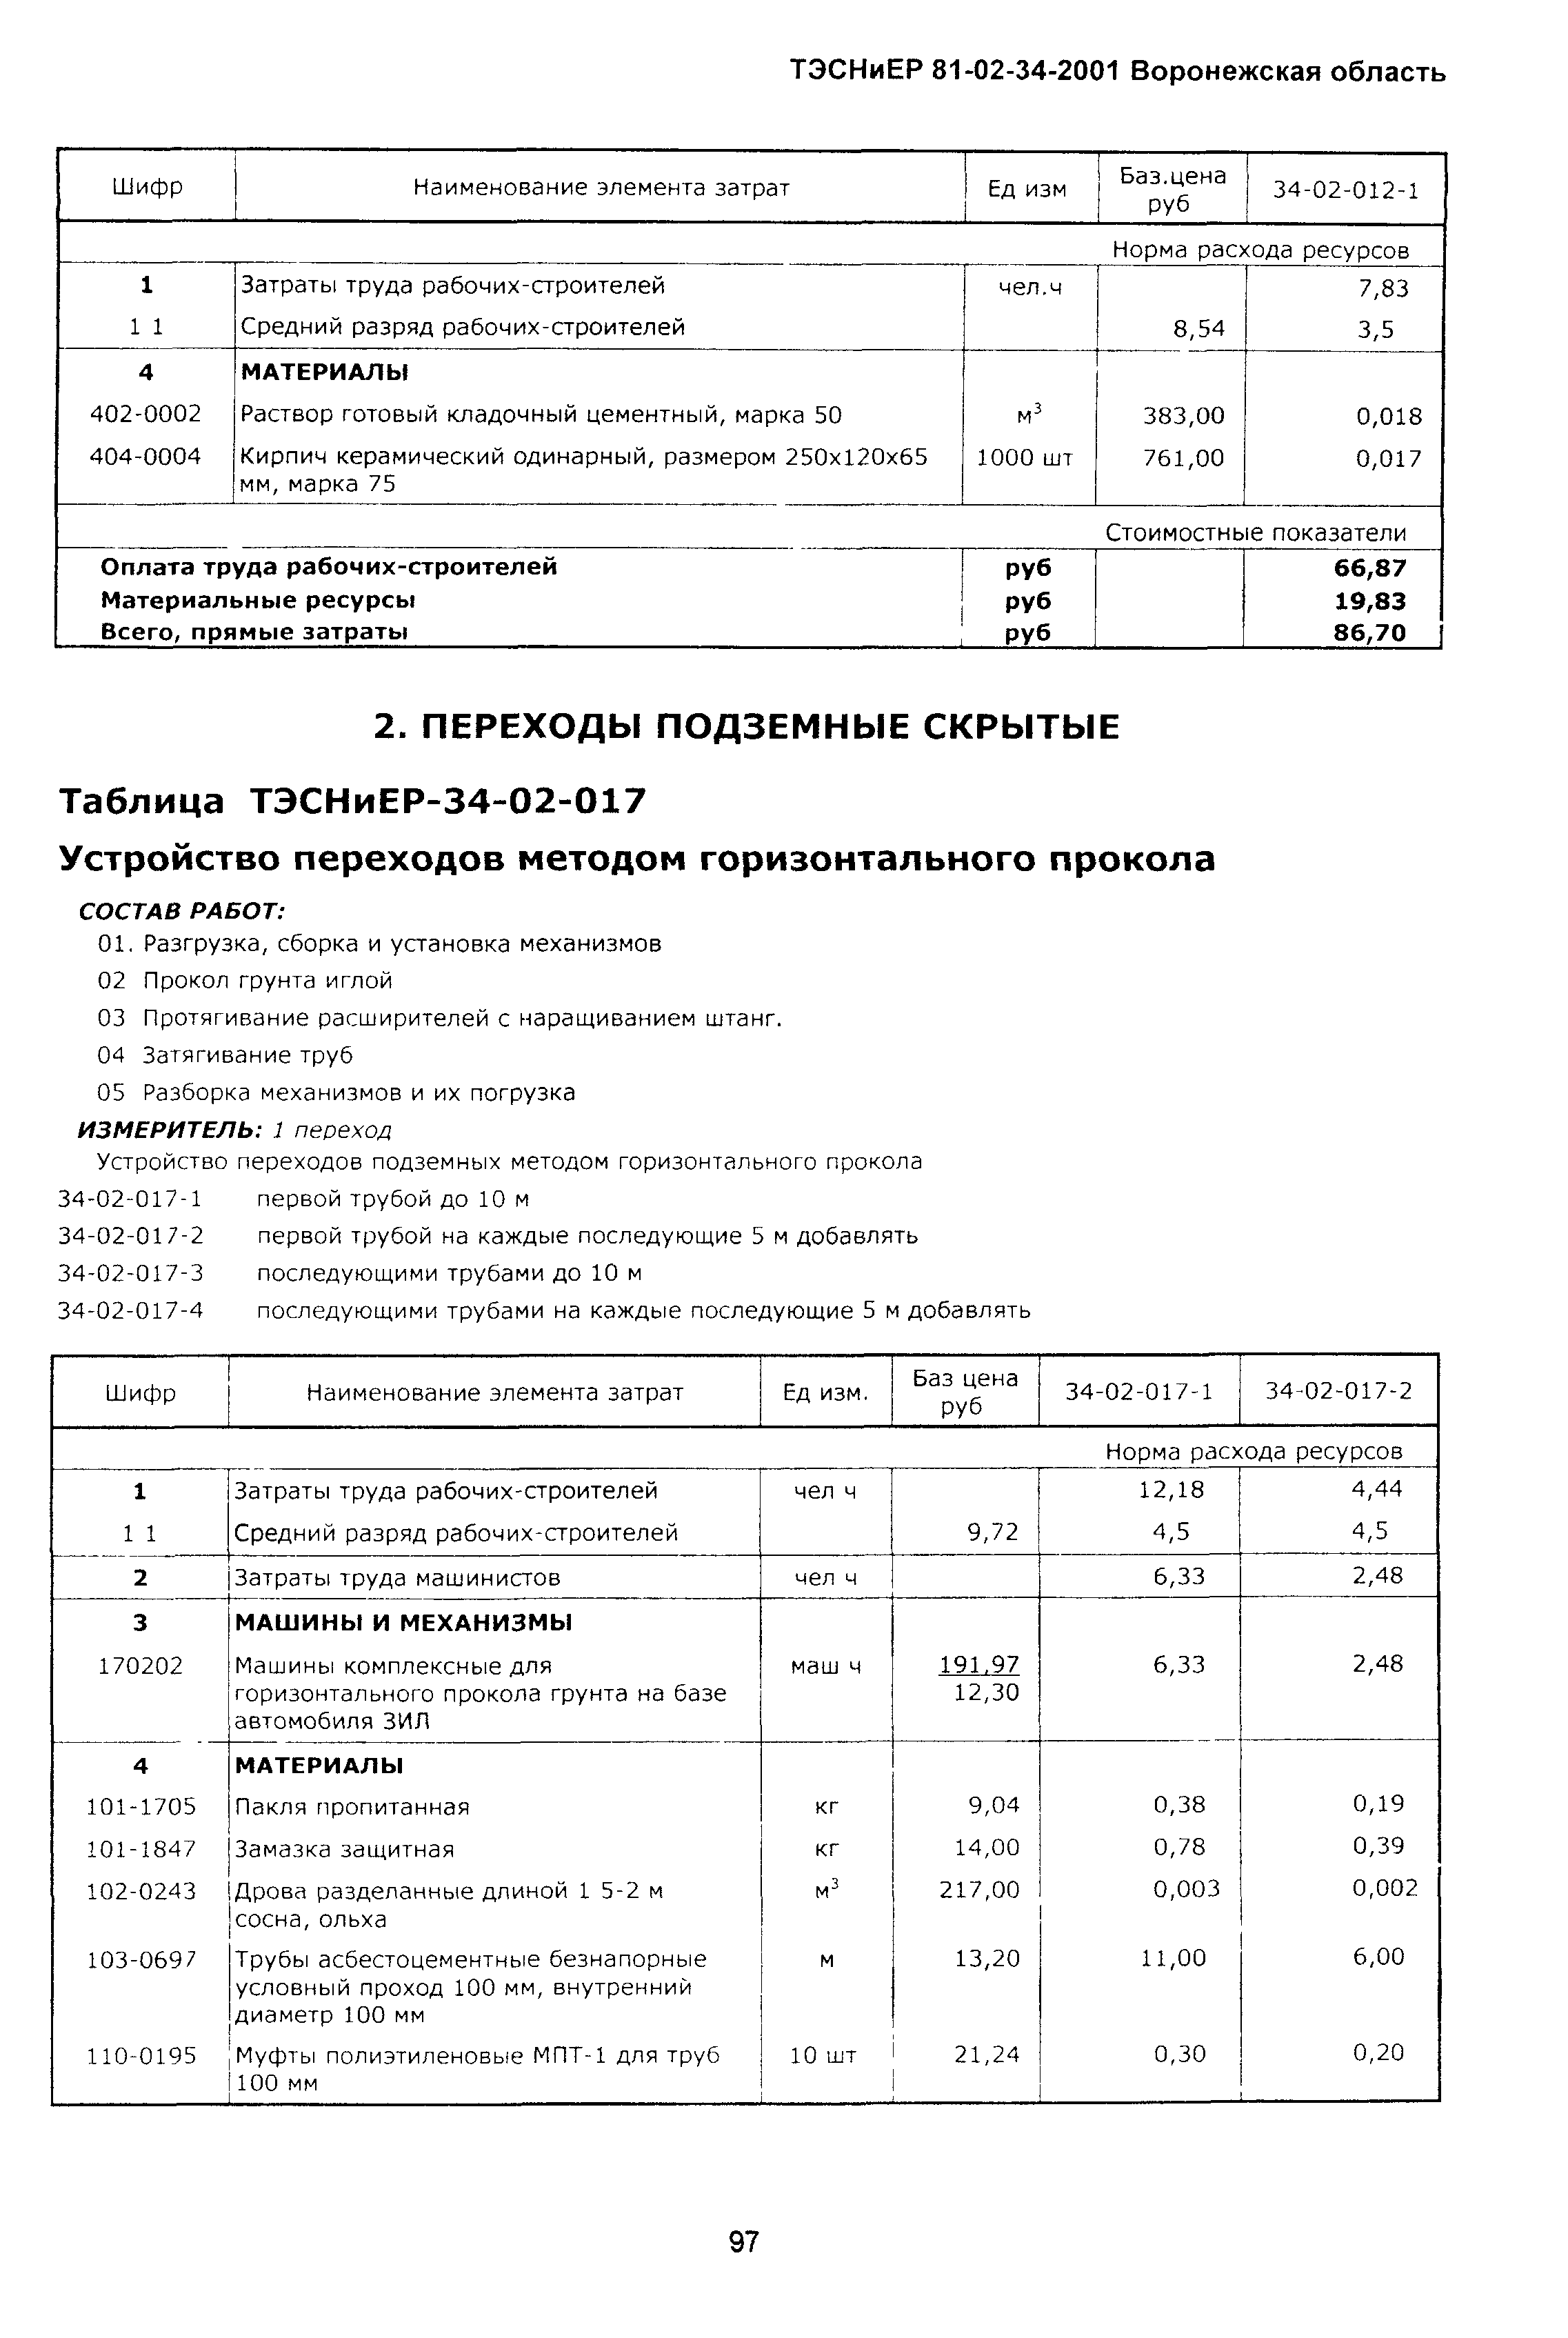 ТЭСНиЕР Воронежской области 81-02-34-2001